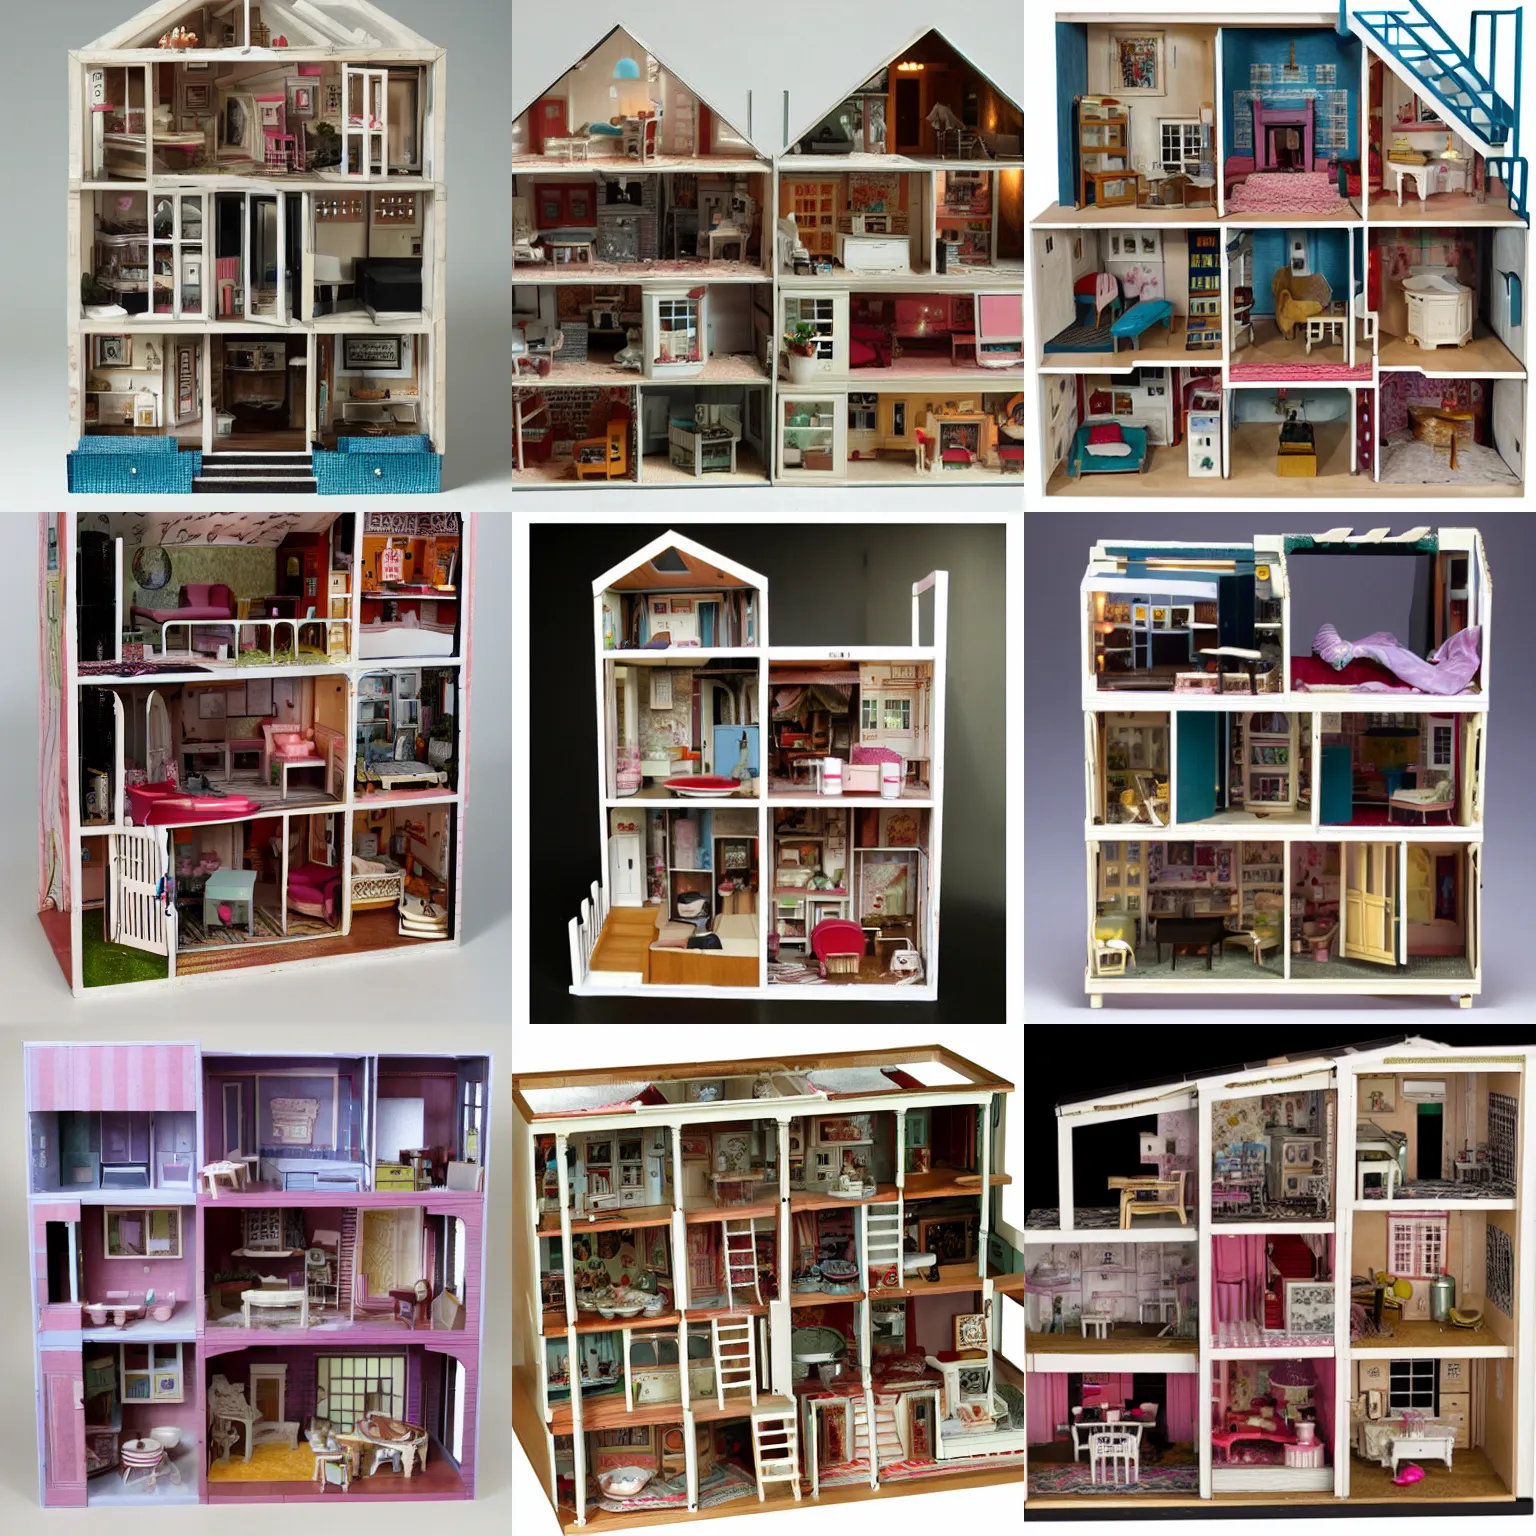 Prompt: cutaway dollhouse